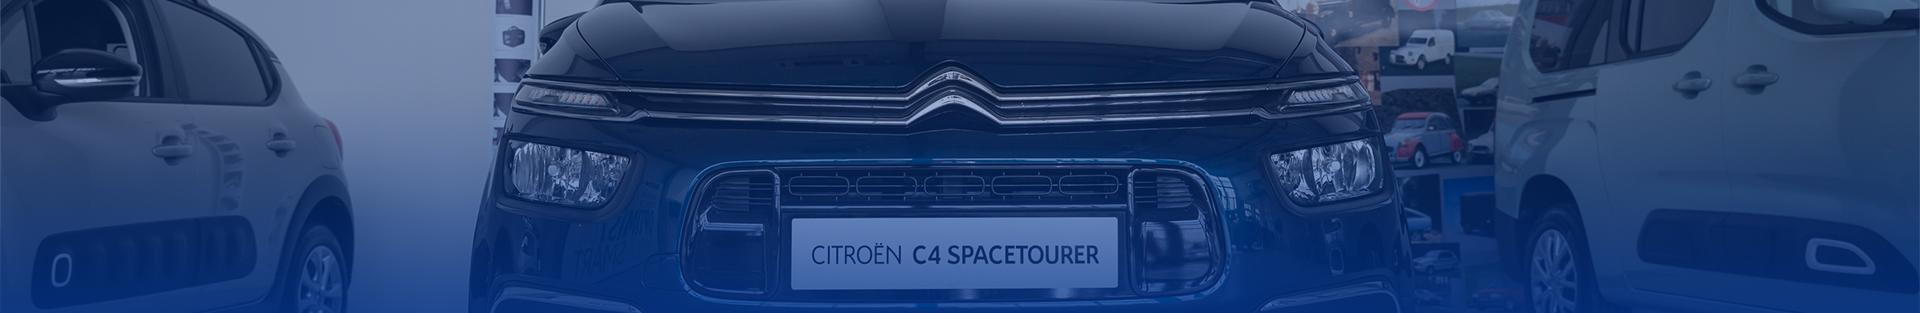 Citroën Berlingopartner pro vaše dobrodružství